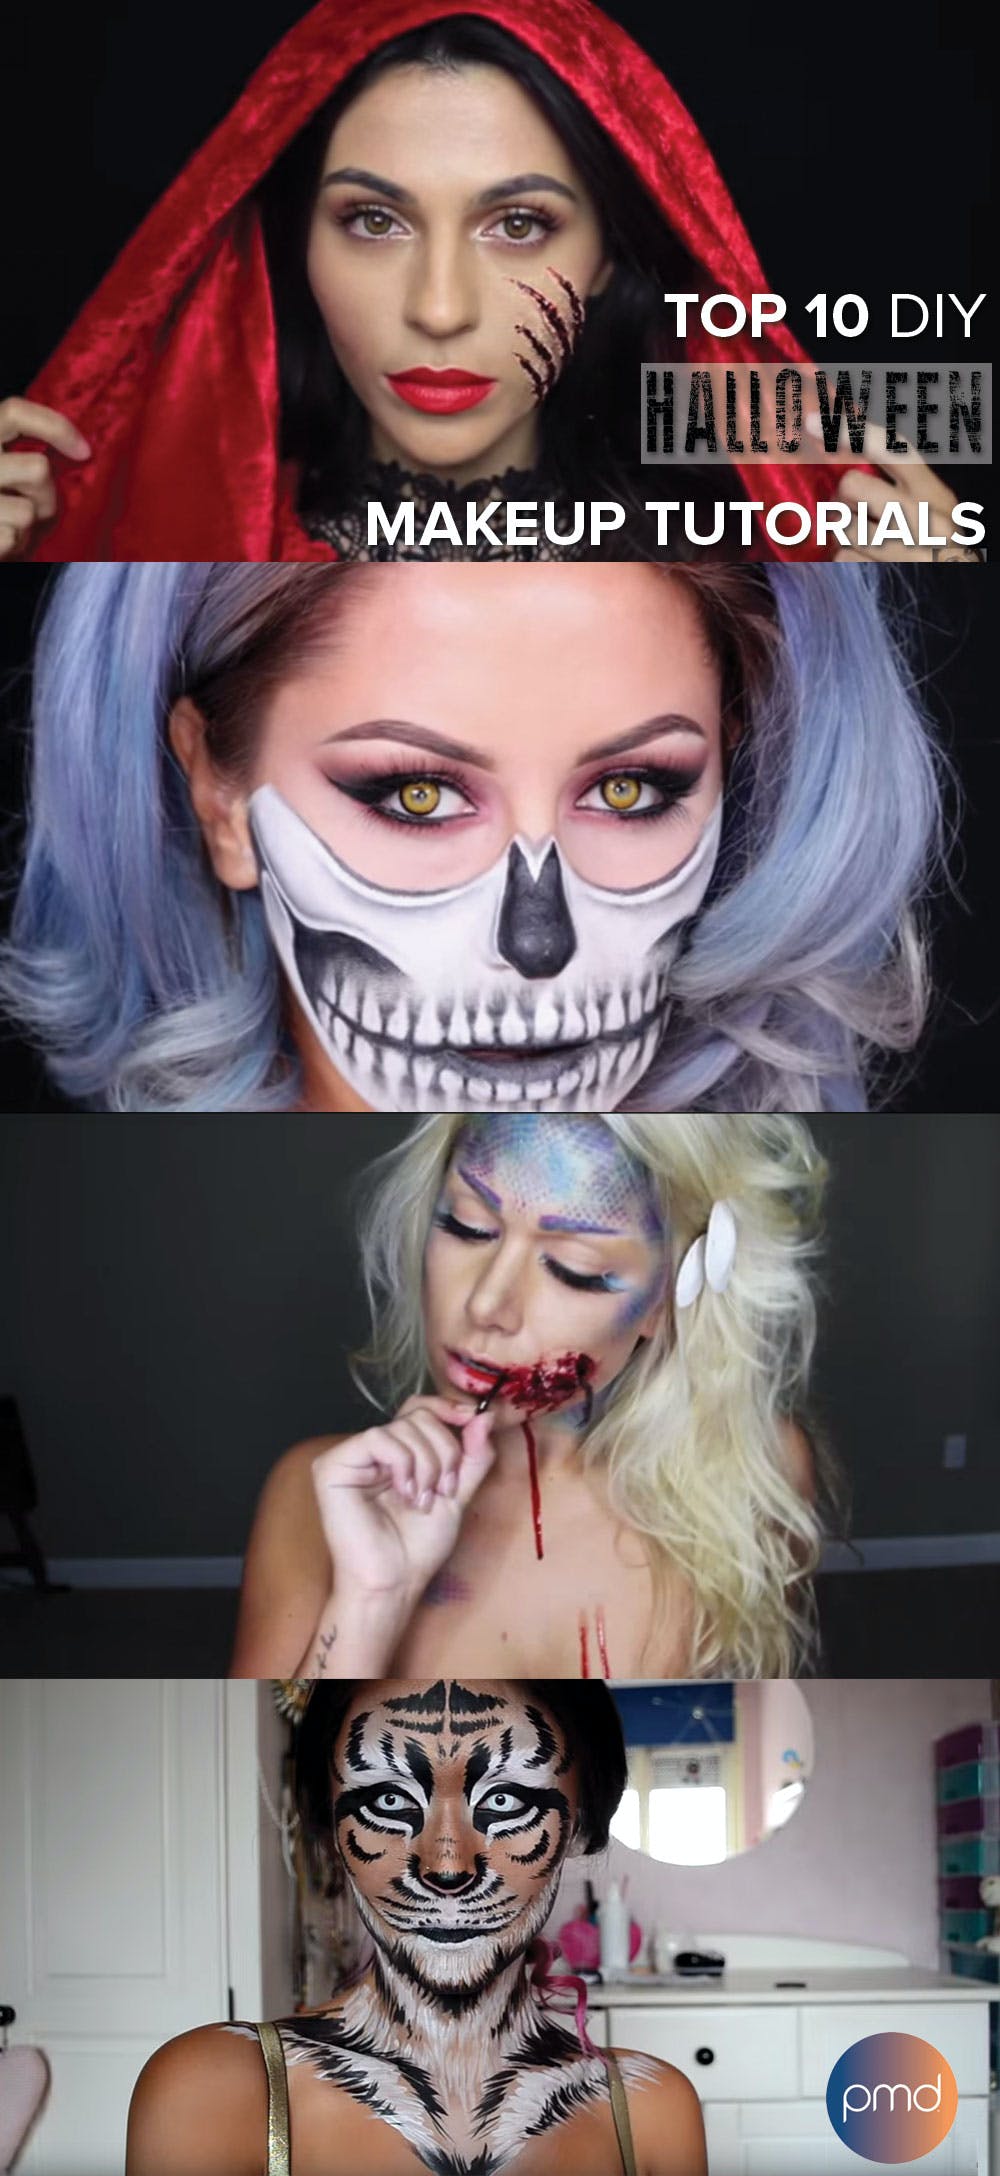 Top 10 DIY Halloween Makeup Tutorials